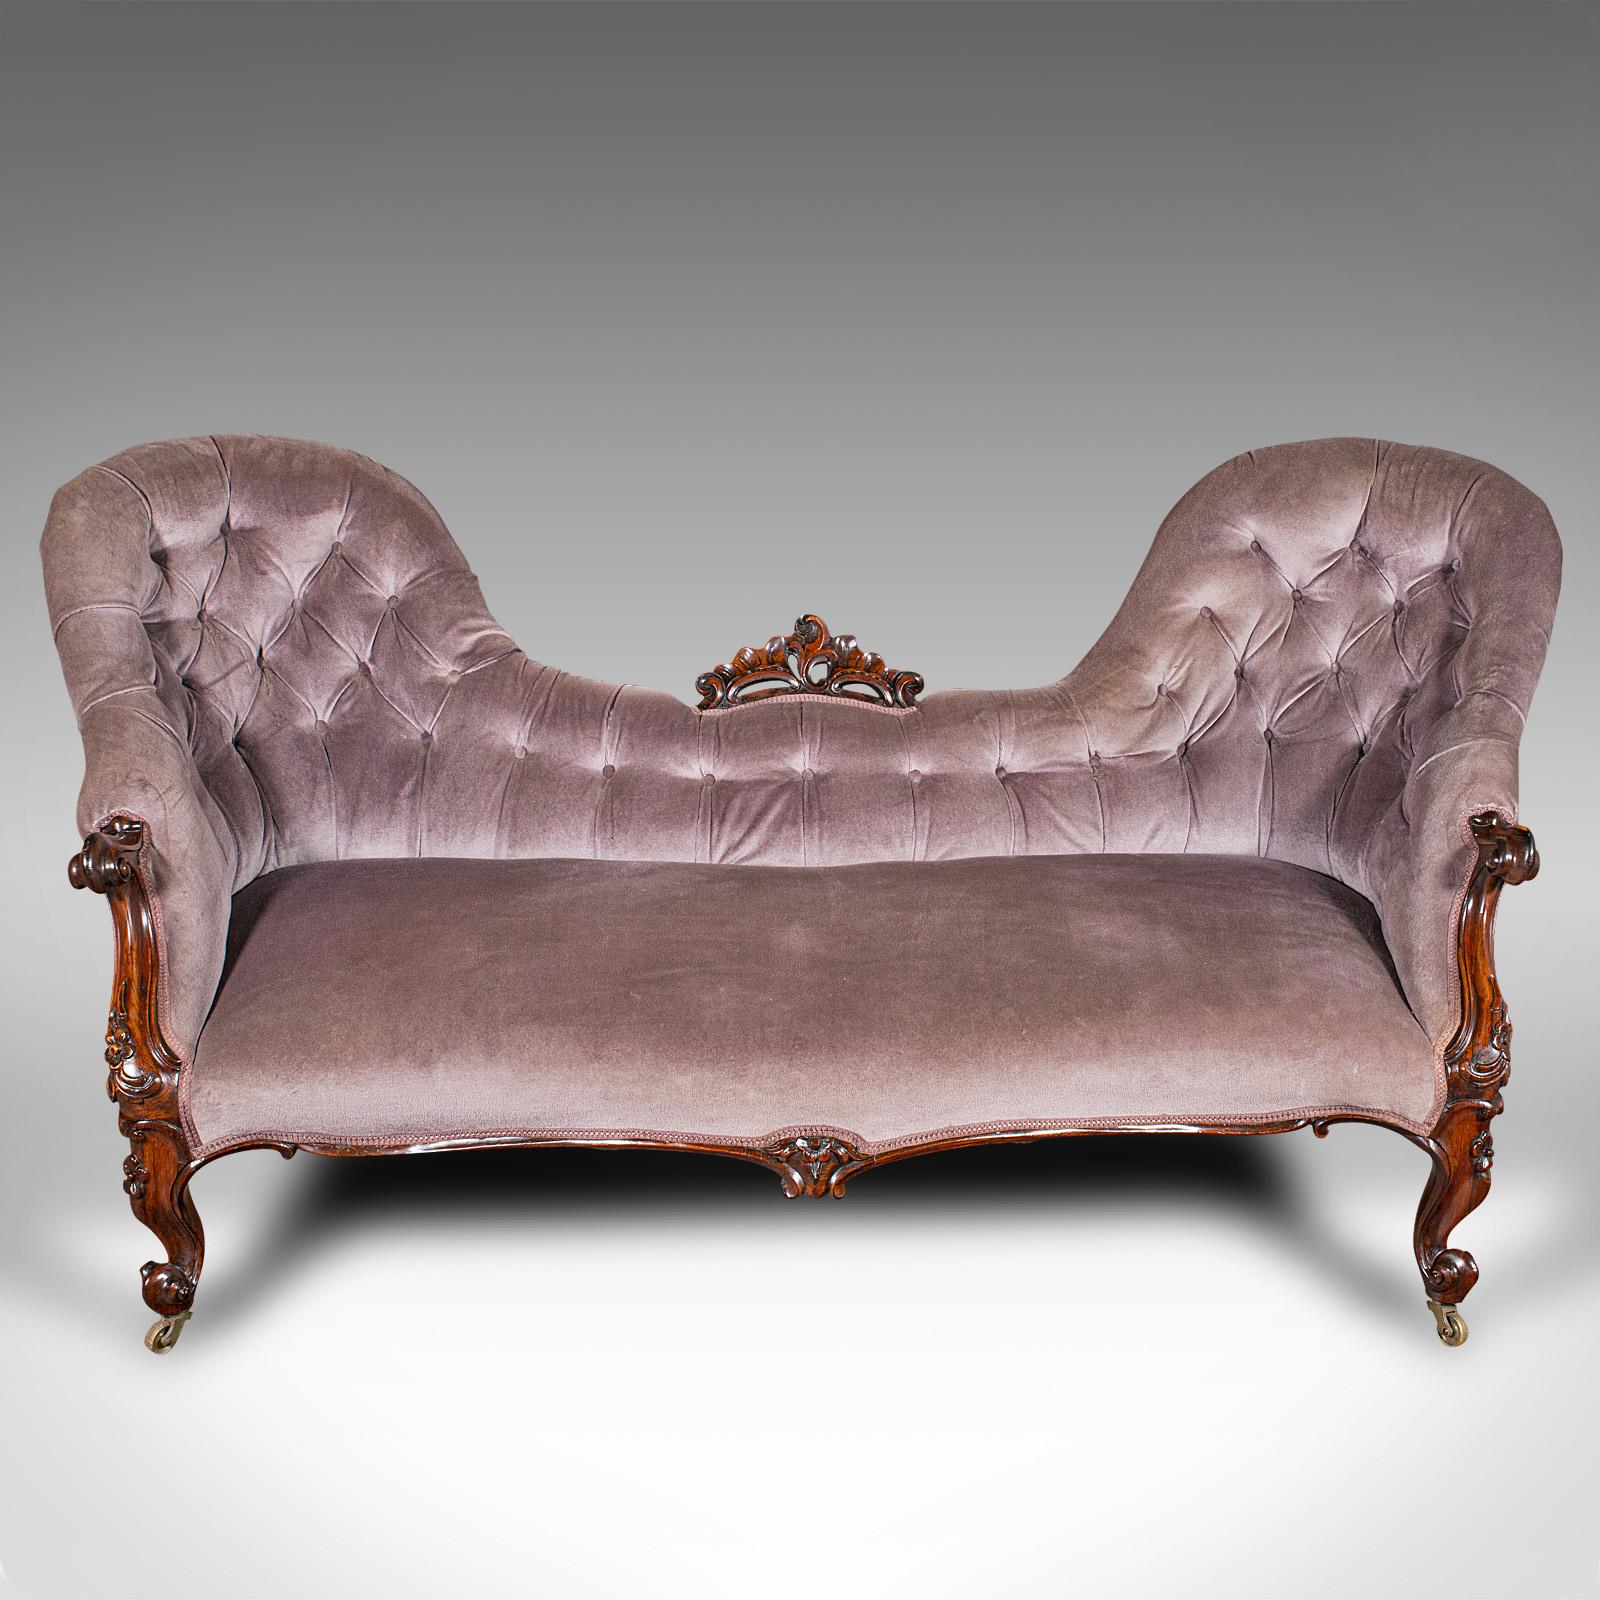 Dies ist ein antikes Doppel-Löffel-Sofa. Ein englisches Dreisitzer-Sofa aus Palisanderholz mit Verzierungen aus der frühen viktorianischen Zeit, um 1840.

Auffallende Form A und handwerkliche Kunstfertigkeit
Zeigt eine wünschenswerte gealterte